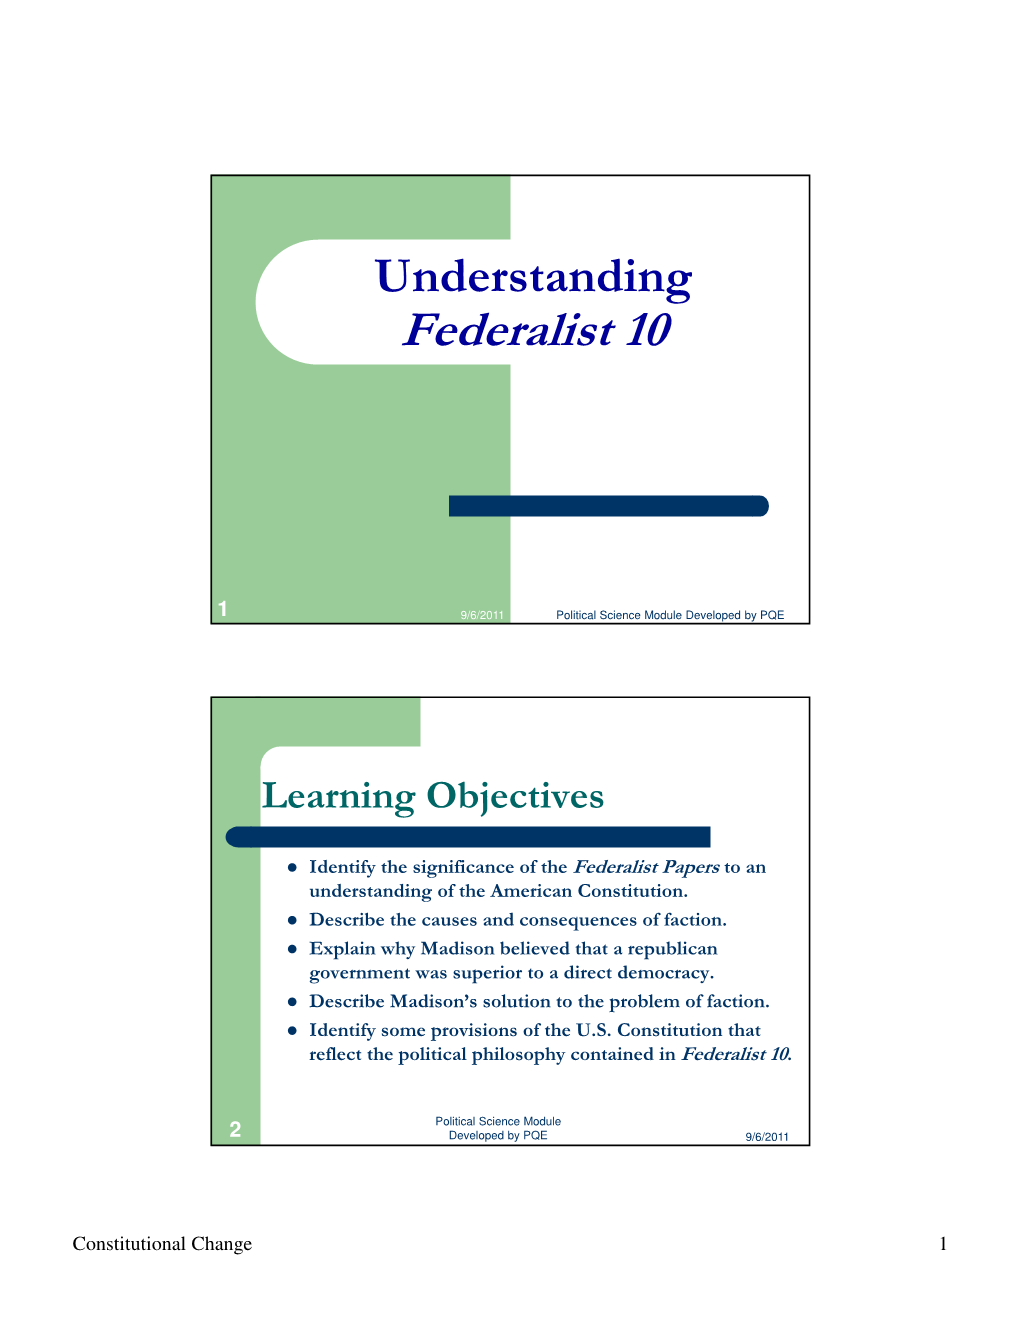 Understanding Federalist 10